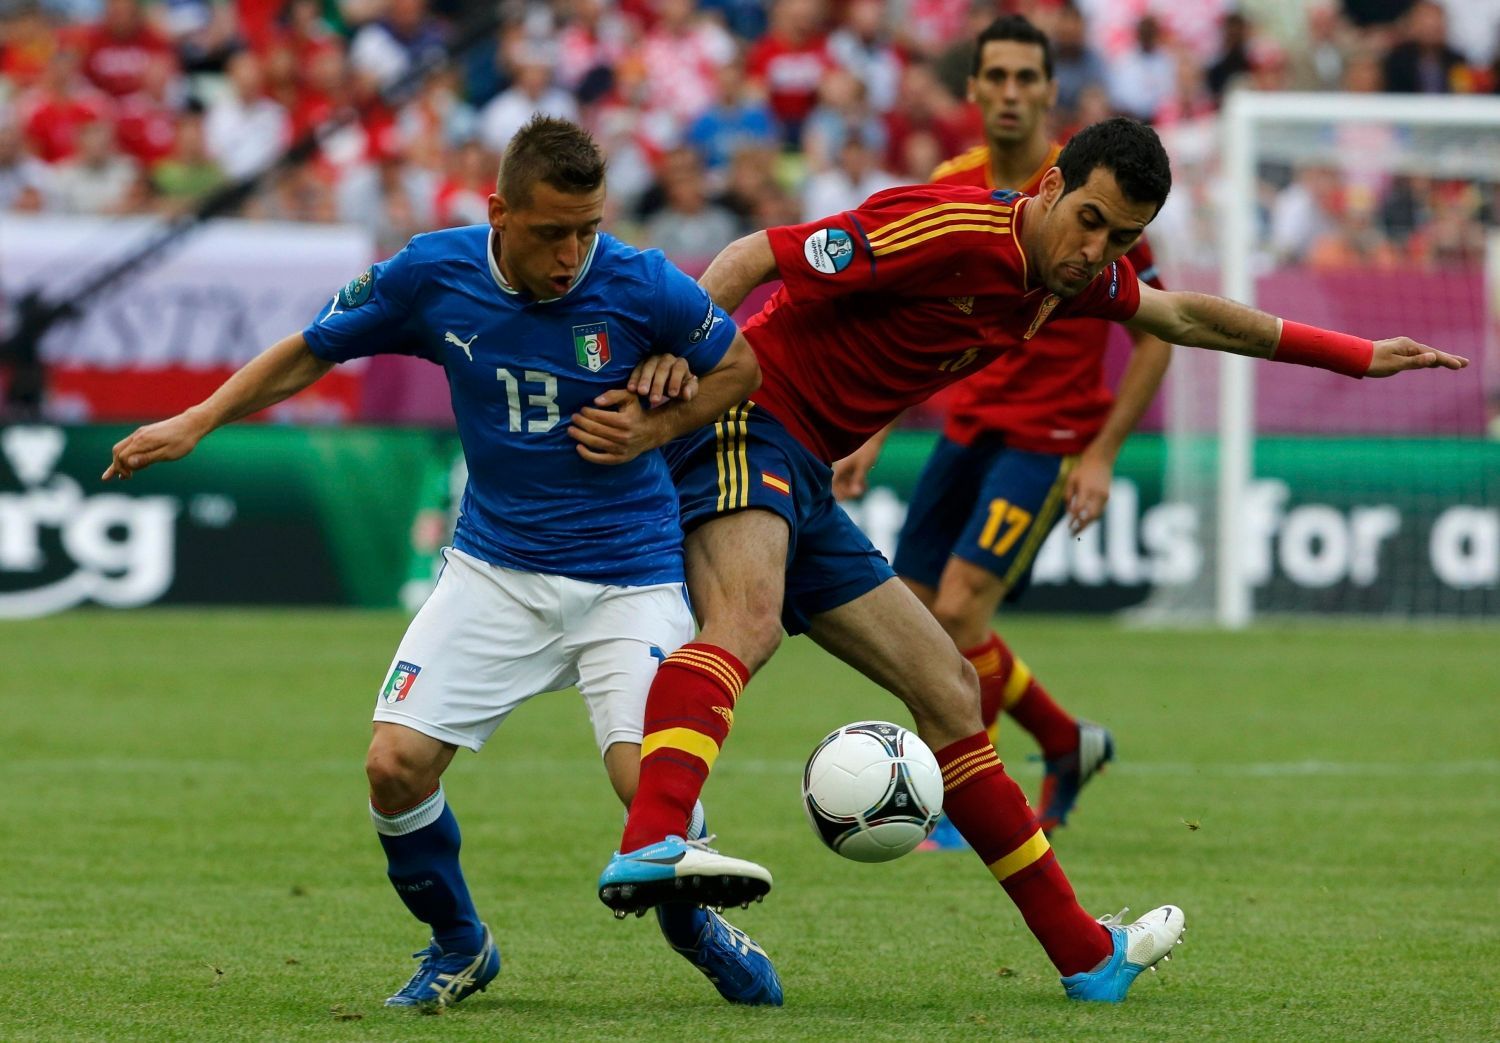 Emanuele Giaccherini a Sergio Busquets v utkání základní skupiny mezi Španělskem a Itálií na Euru 2012